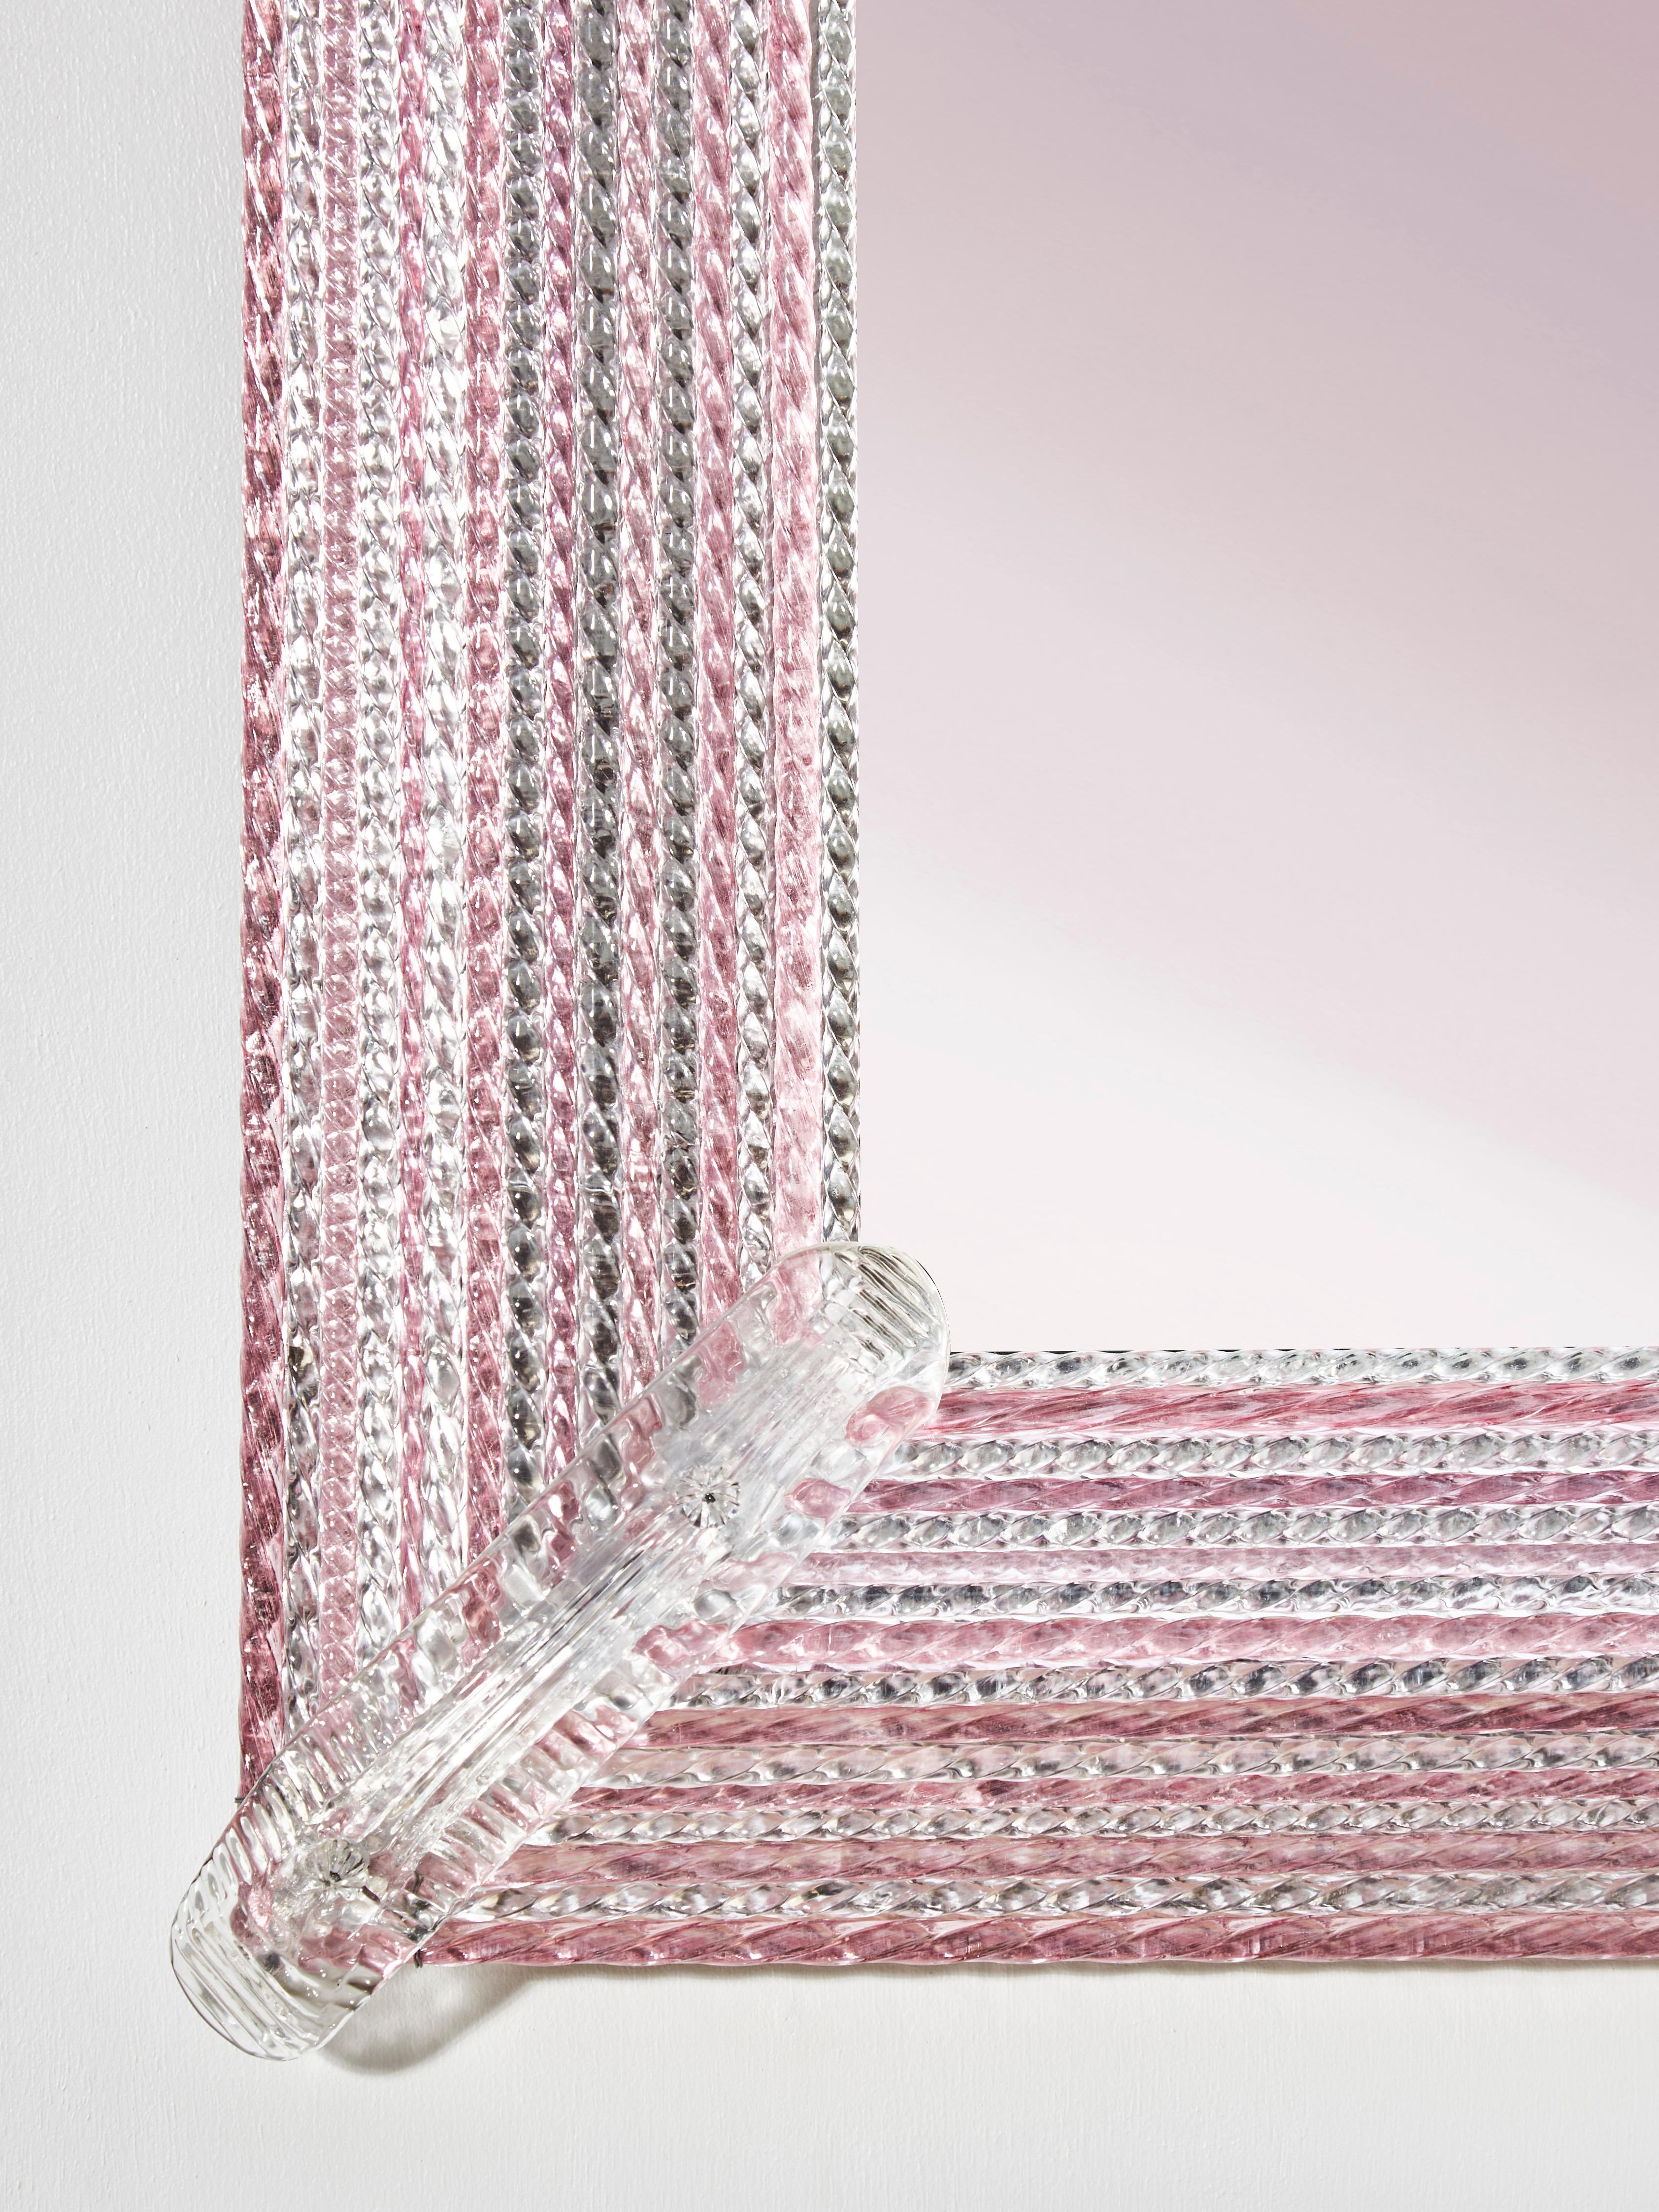 Prächtiger Spiegel mit Rahmen aus fein geschliffenem rosa Muranoglas.
(Paar verfügbar)
Gestaltung durch Studio Glustin.